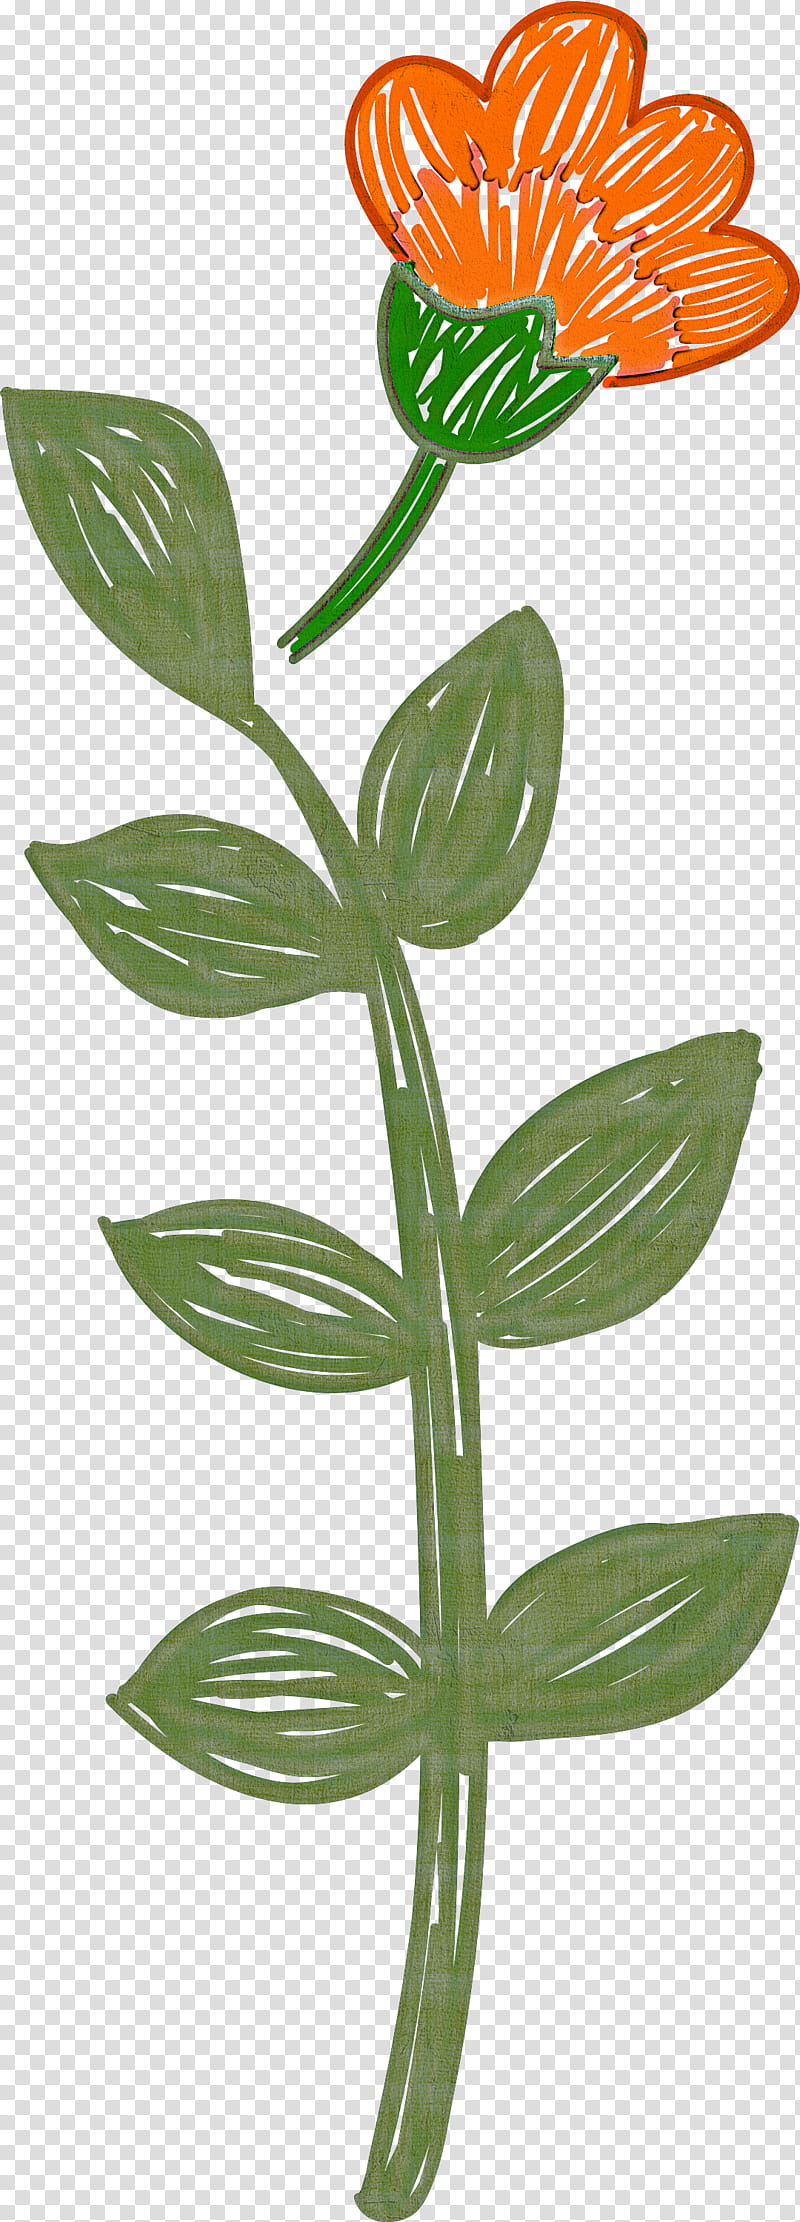 Mexico elements, Flower, Plant Stem, Petal, Leaf, Tulip, Cut Flowers, Peduncle transparent background PNG clipart